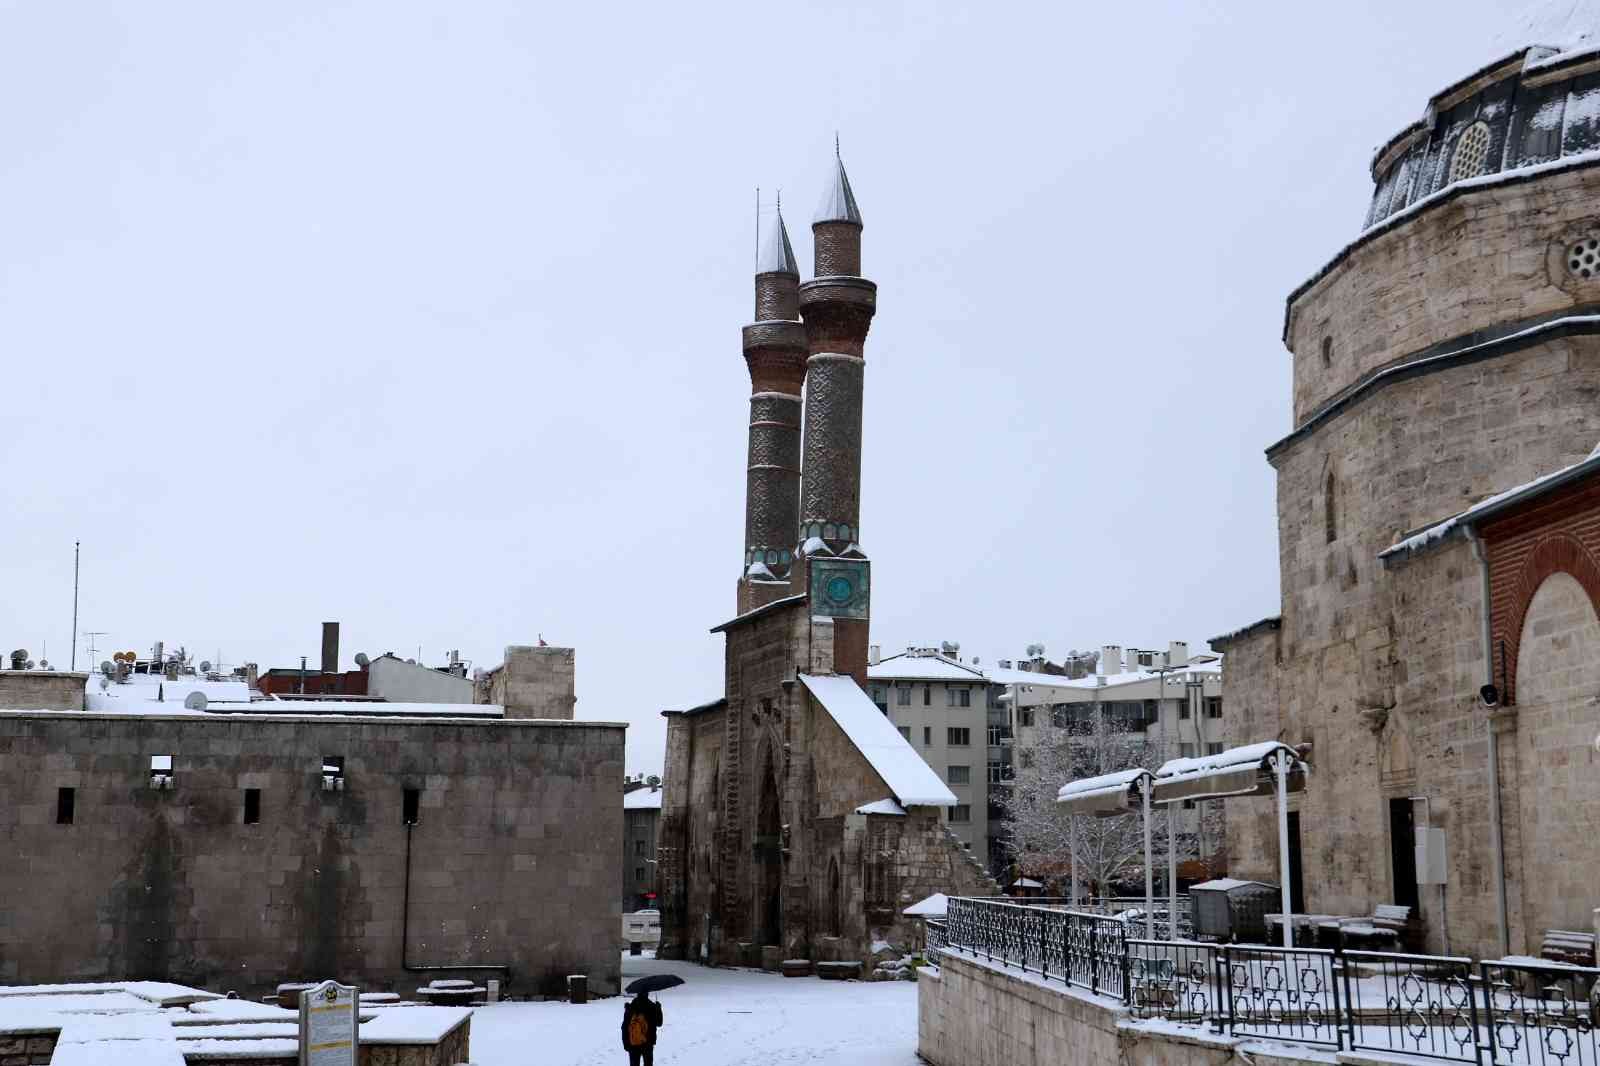 Tarihi kentte kar kartpostallık görüntüler oluşturdu #sivas